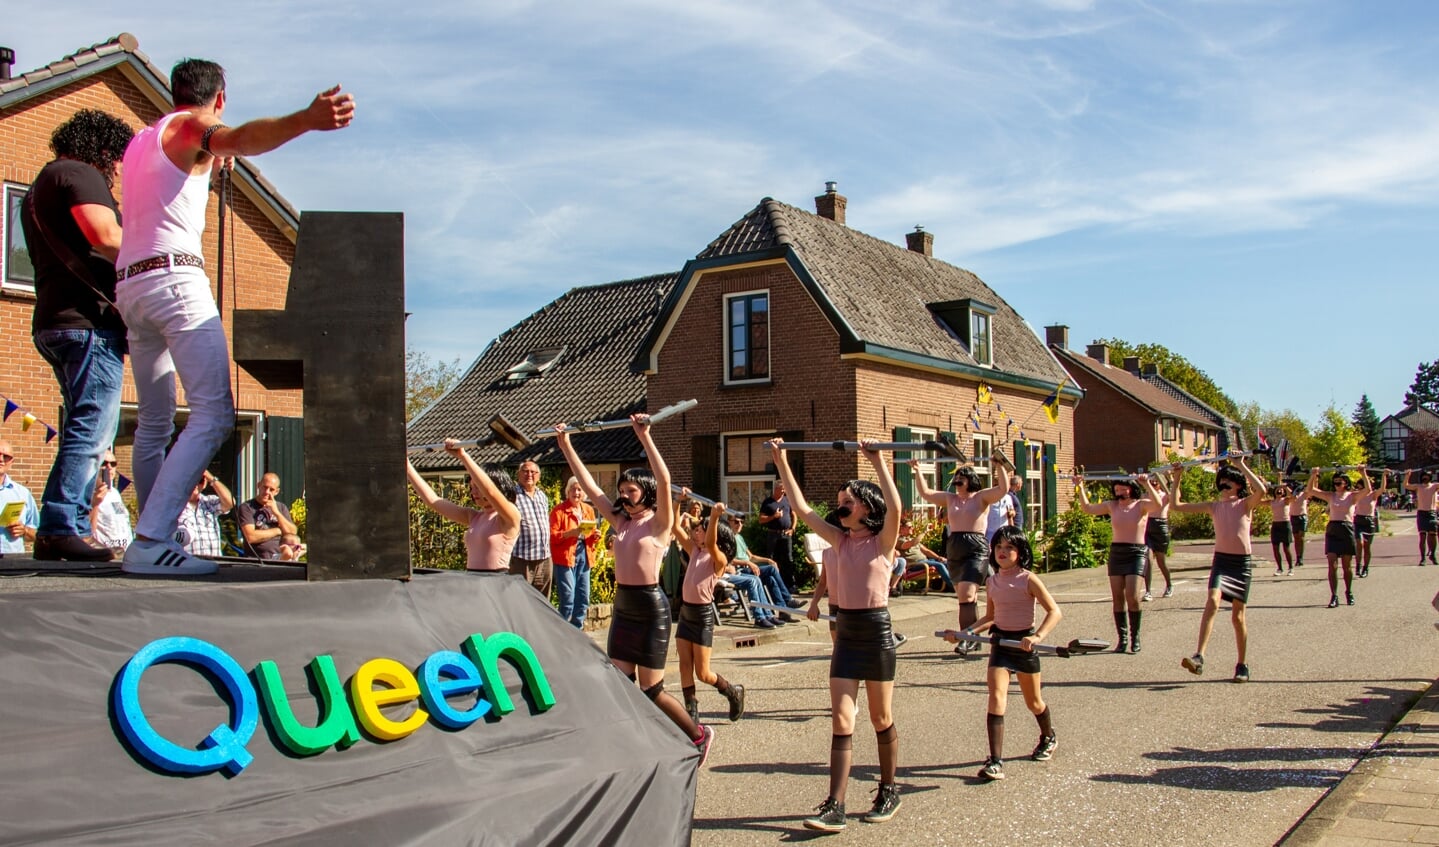 De publieksprijs was voor Queen en I want to break free van de Julianalaan. Foto: Achterhoekfoto.nl/Liesbeth Spaansen